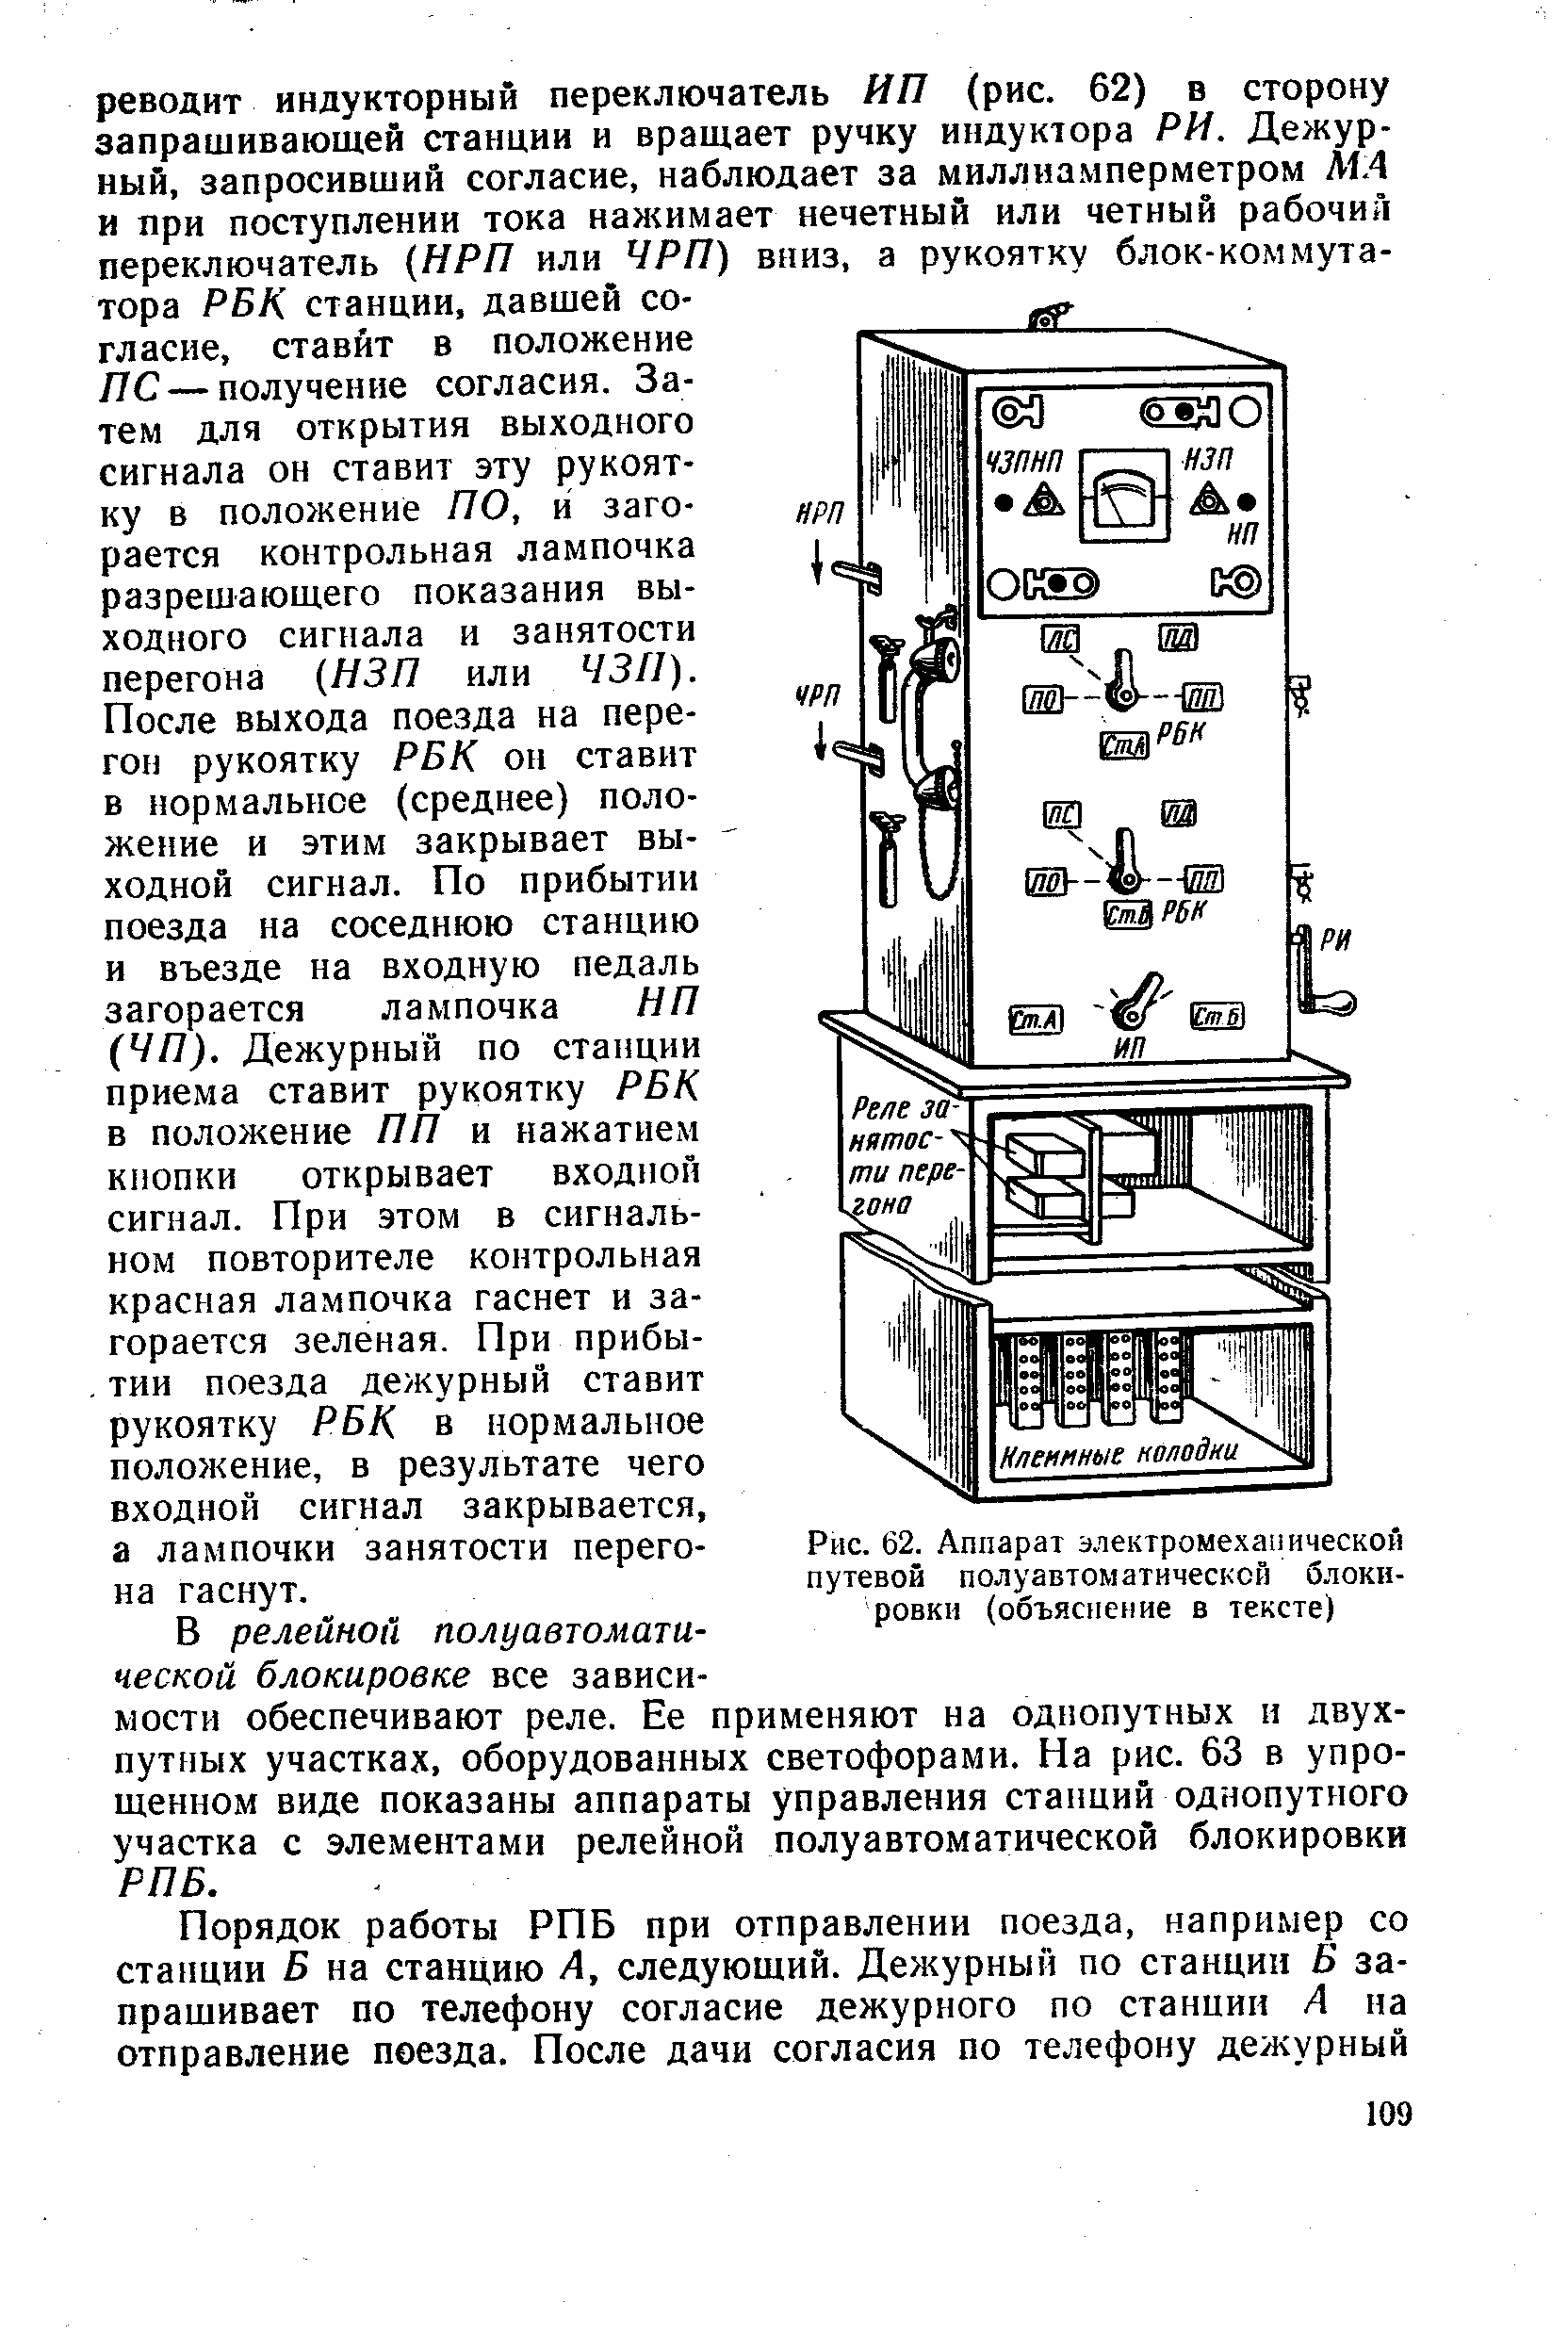 Рис. 62. Аппарат электромеханической путевой полуавтоматической блокировки (объяснение в тексте)
